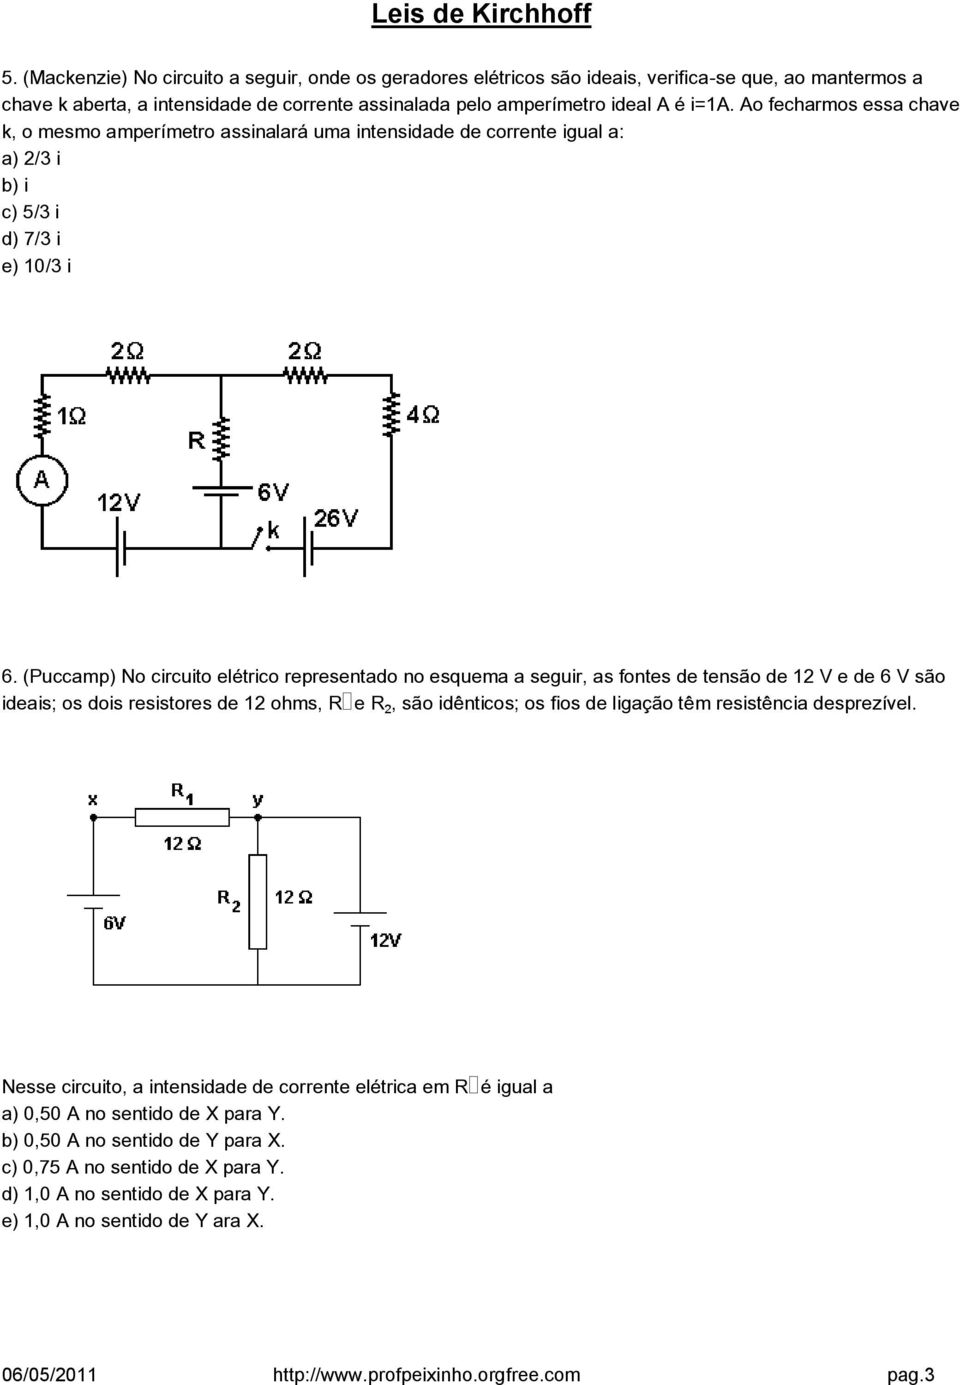 (Puccamp) No circuito elétrico representado no esquema a seguir, as fontes de tensão de 12 V e de 6 V são ideais; os dois resistores de 12 ohms, R e R, são idênticos; os fios de ligação têm